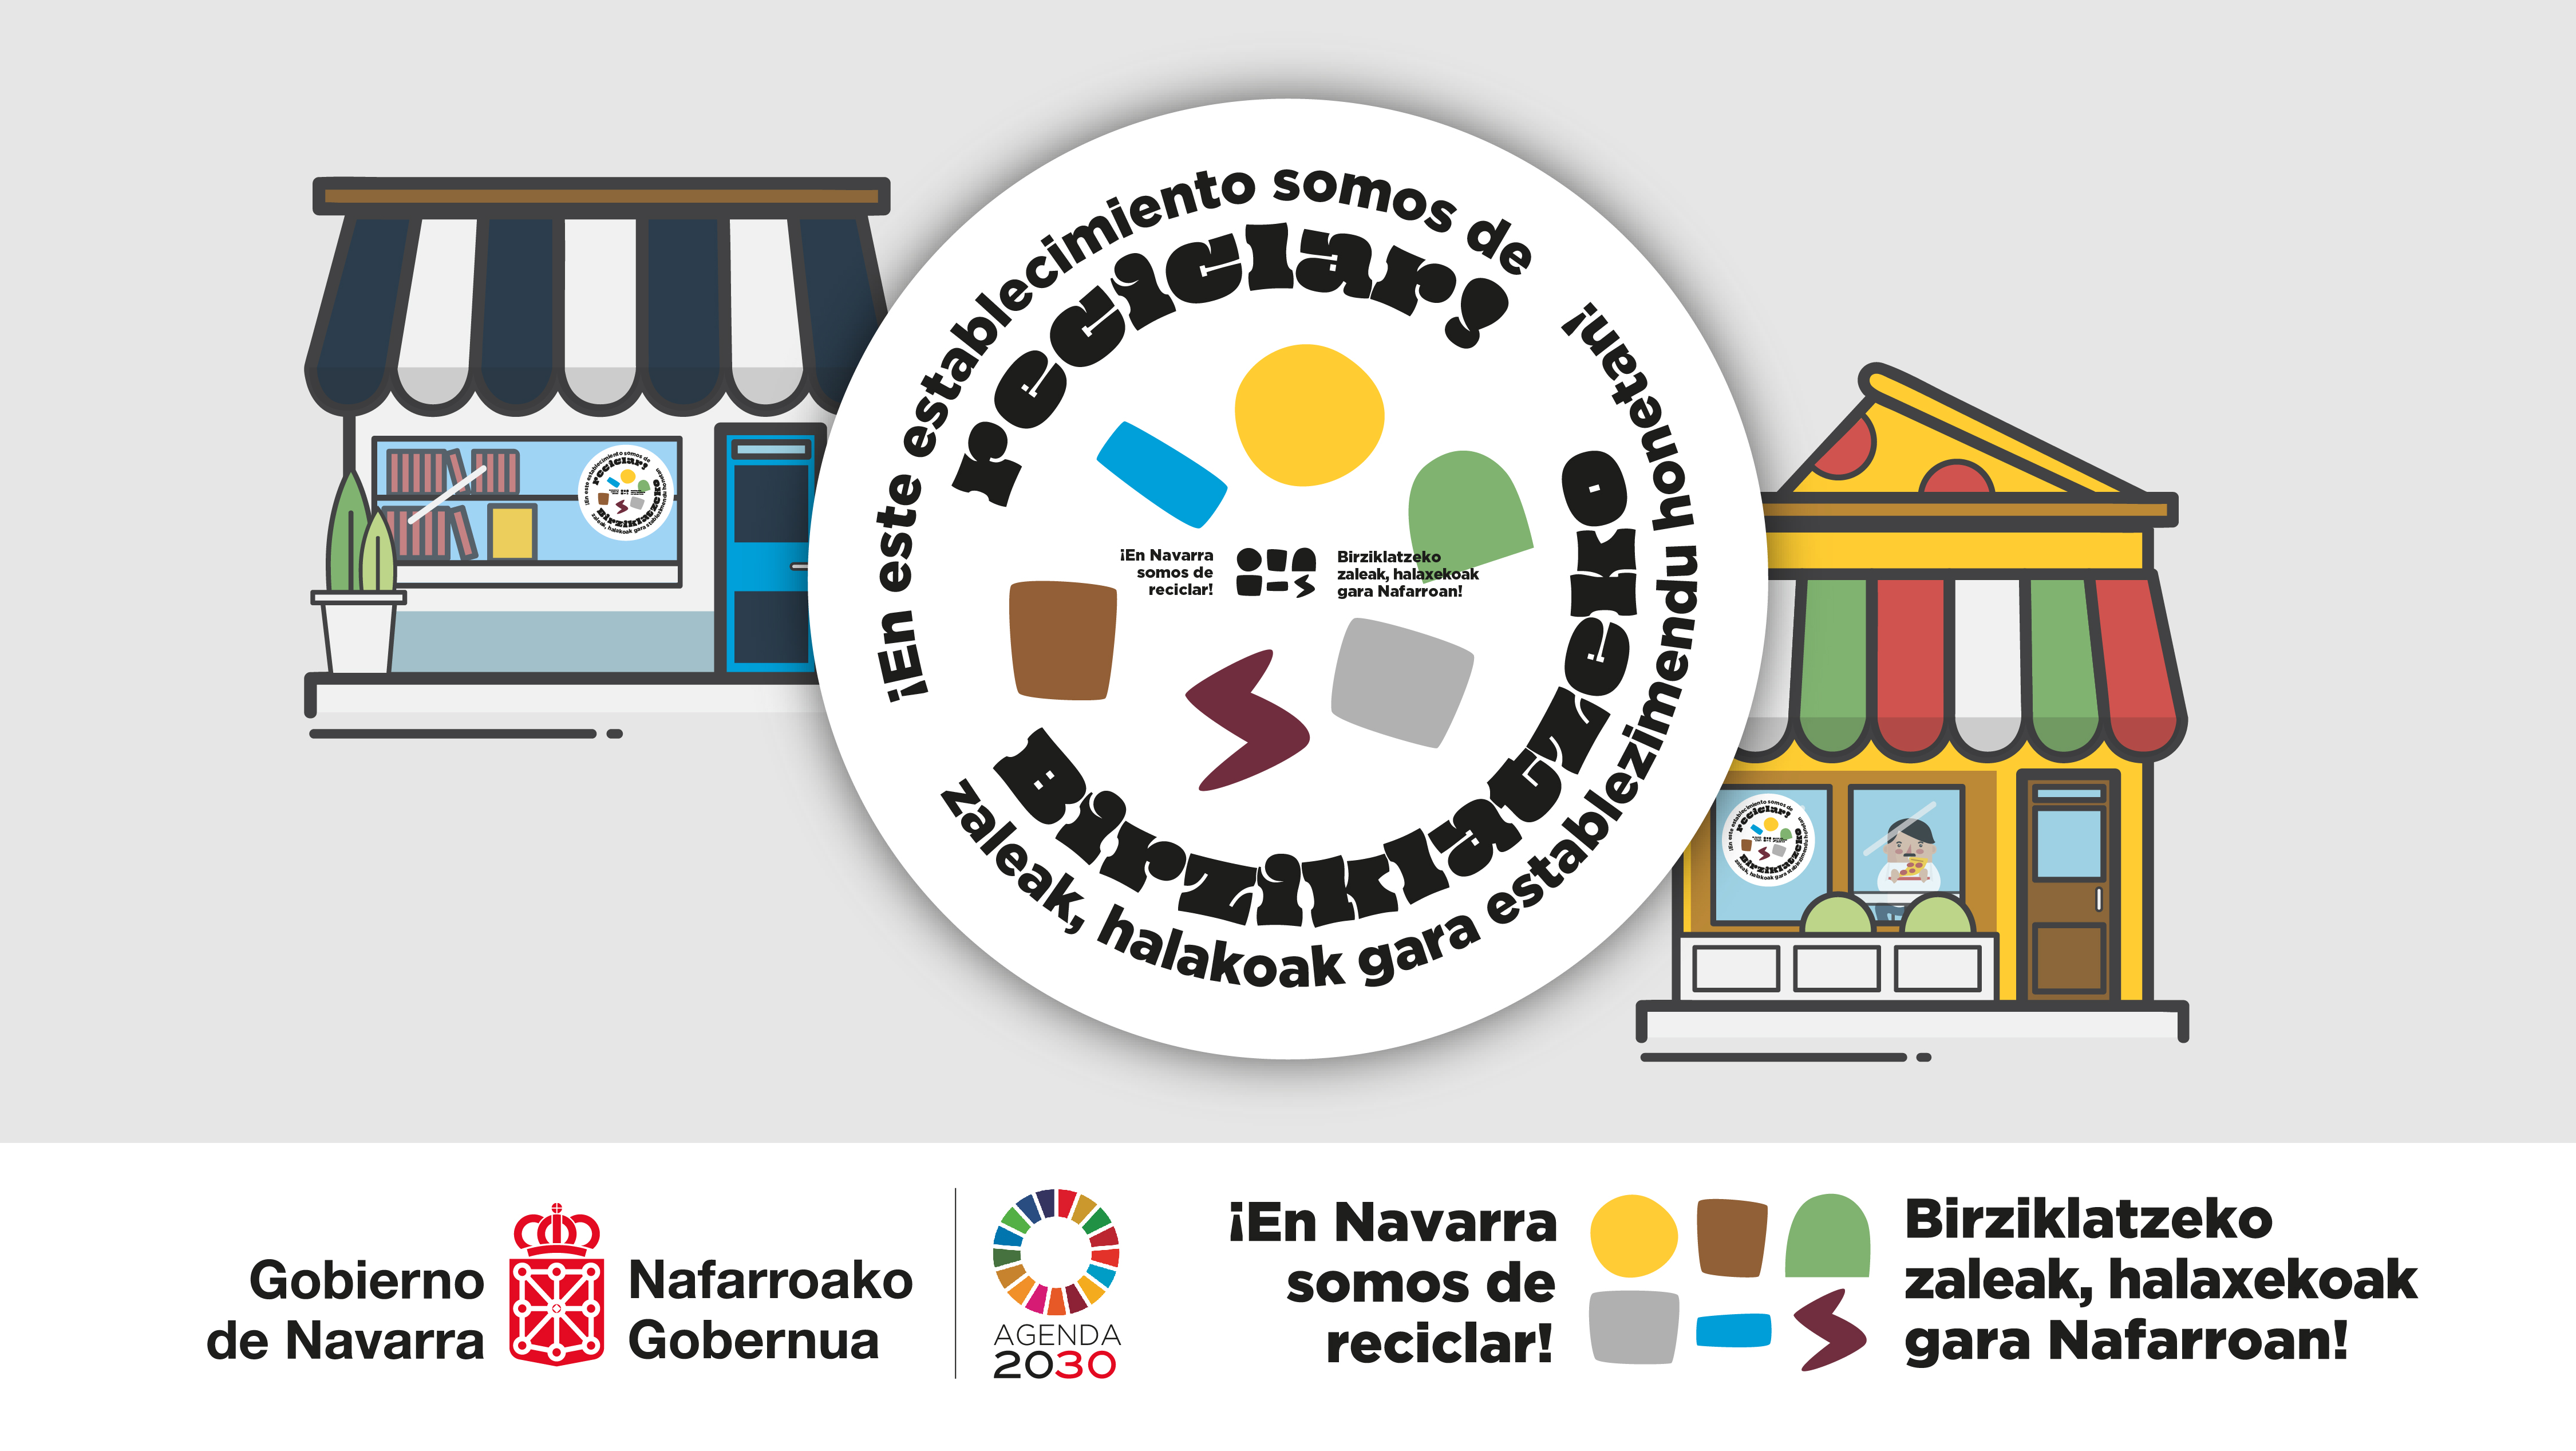 ¡En este establecimiento somos de reciclar!, nueva campaña dirigida al comercio y a la hostelería de Navarra